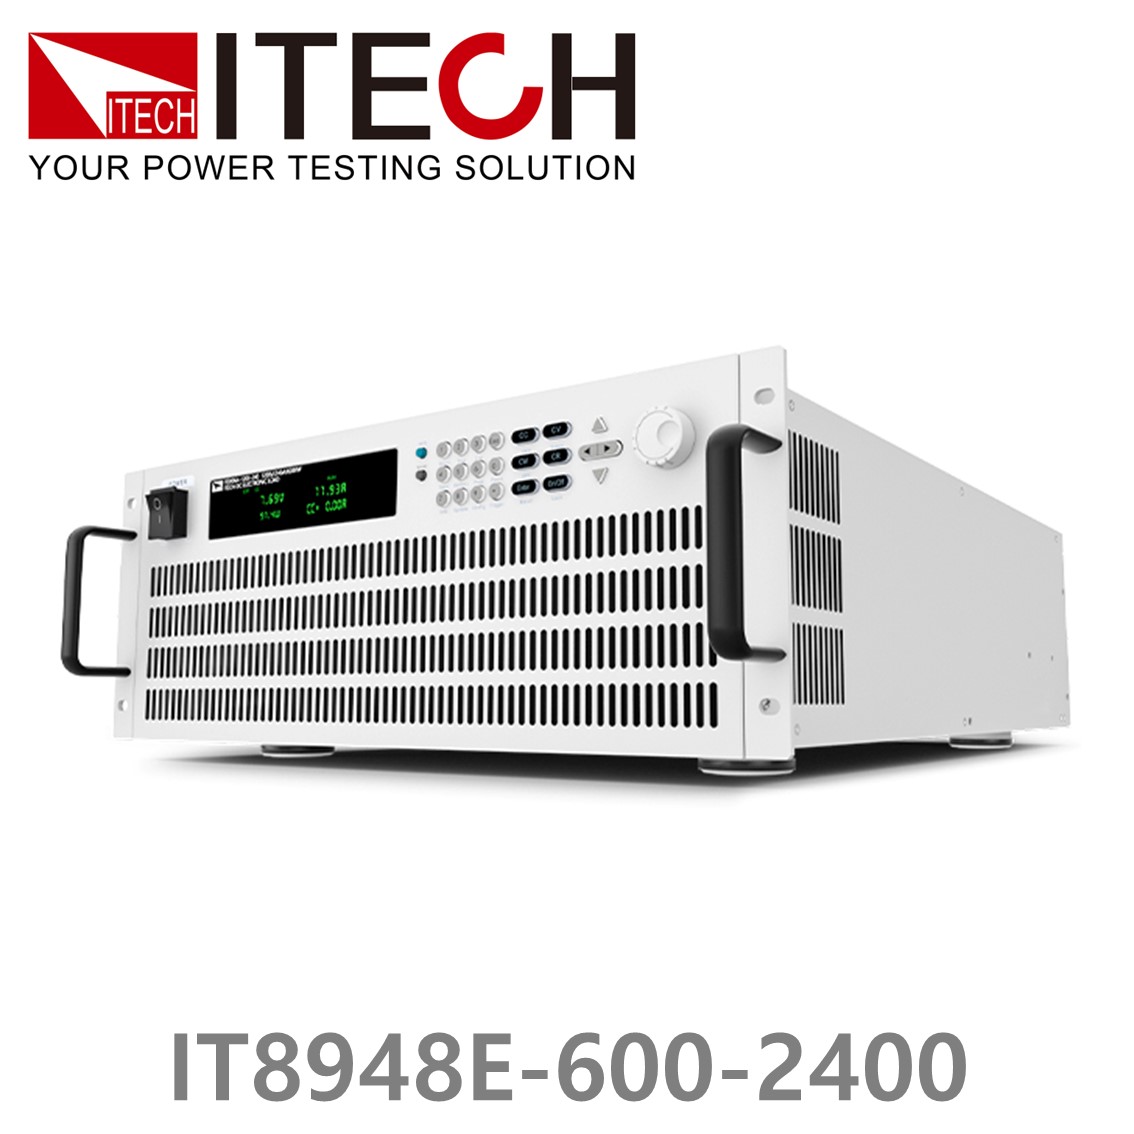 [ ITECH ] IT8948E-600-2400  고성능 고전력 DC 전자로드 600V/2400A/48kW (37U)